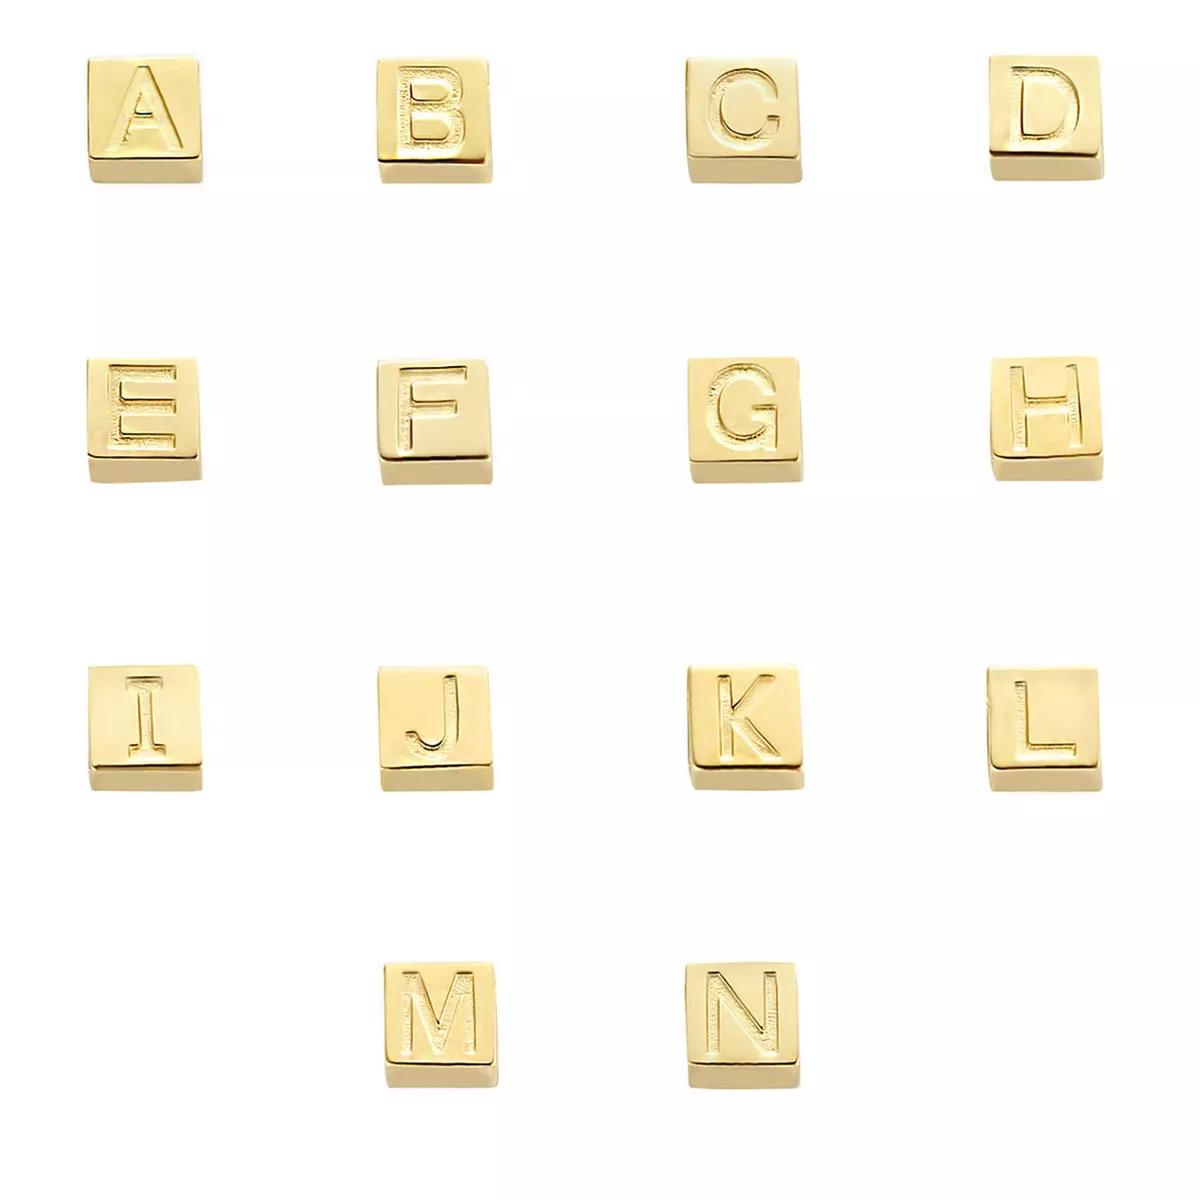 isabel bernard bijouterie, h gold le carré felie 14 karat cube charm en gold - pendentifs & charmspour dames